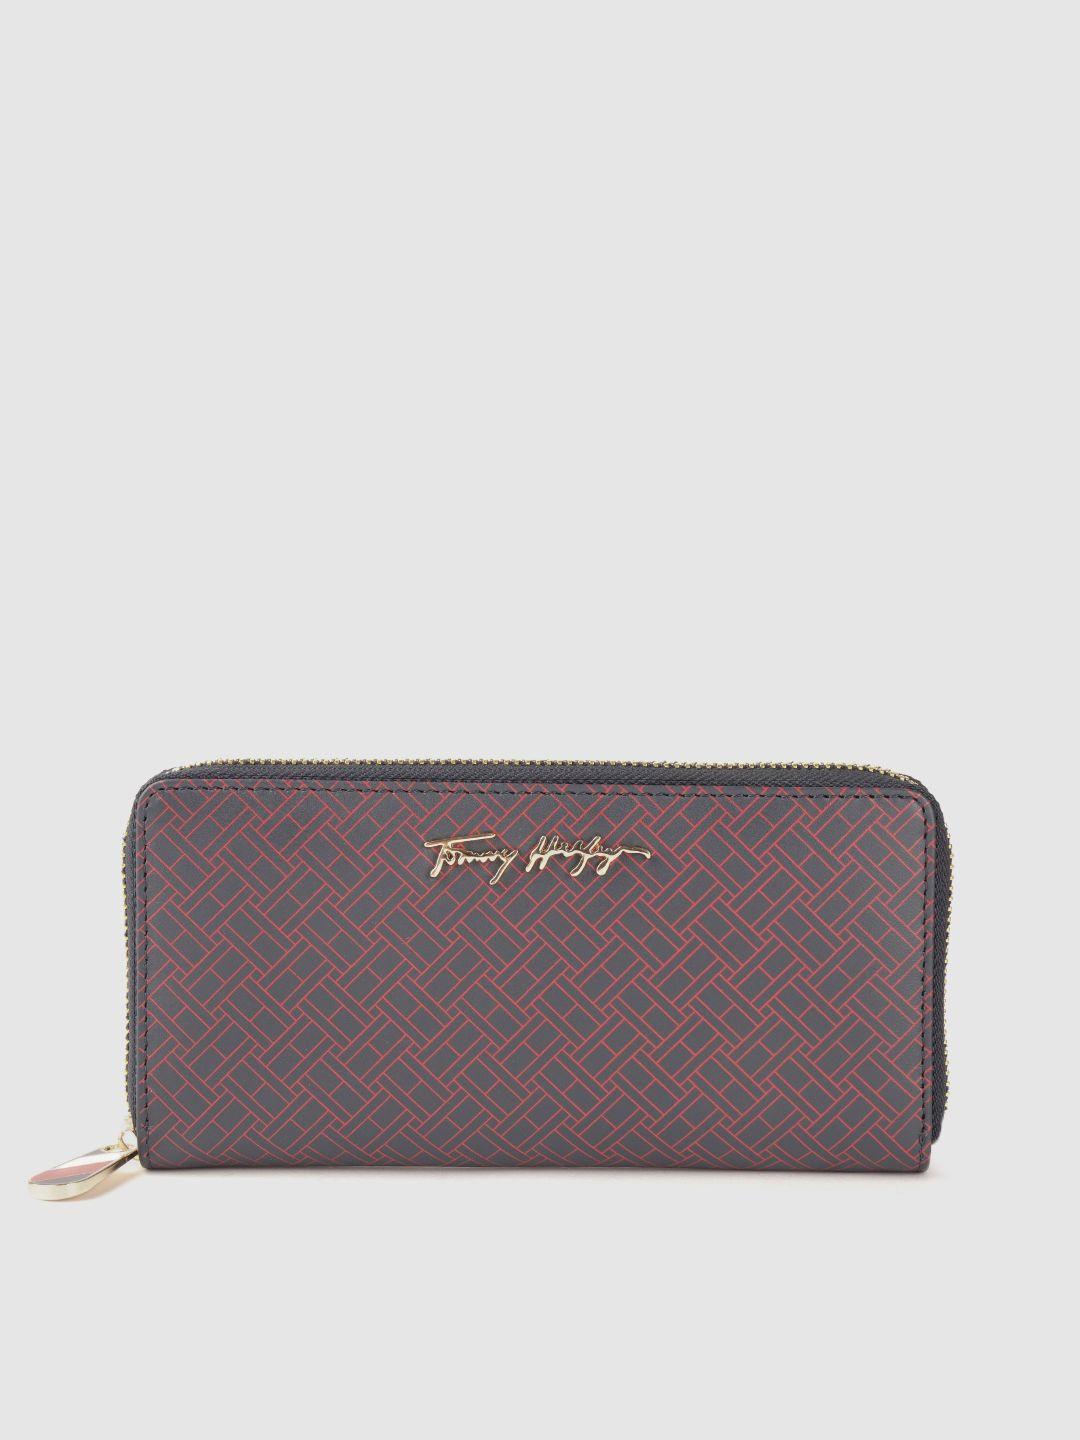 tommy hilfiger women navy blue & burgundy printed zip detail leather zip around wallet